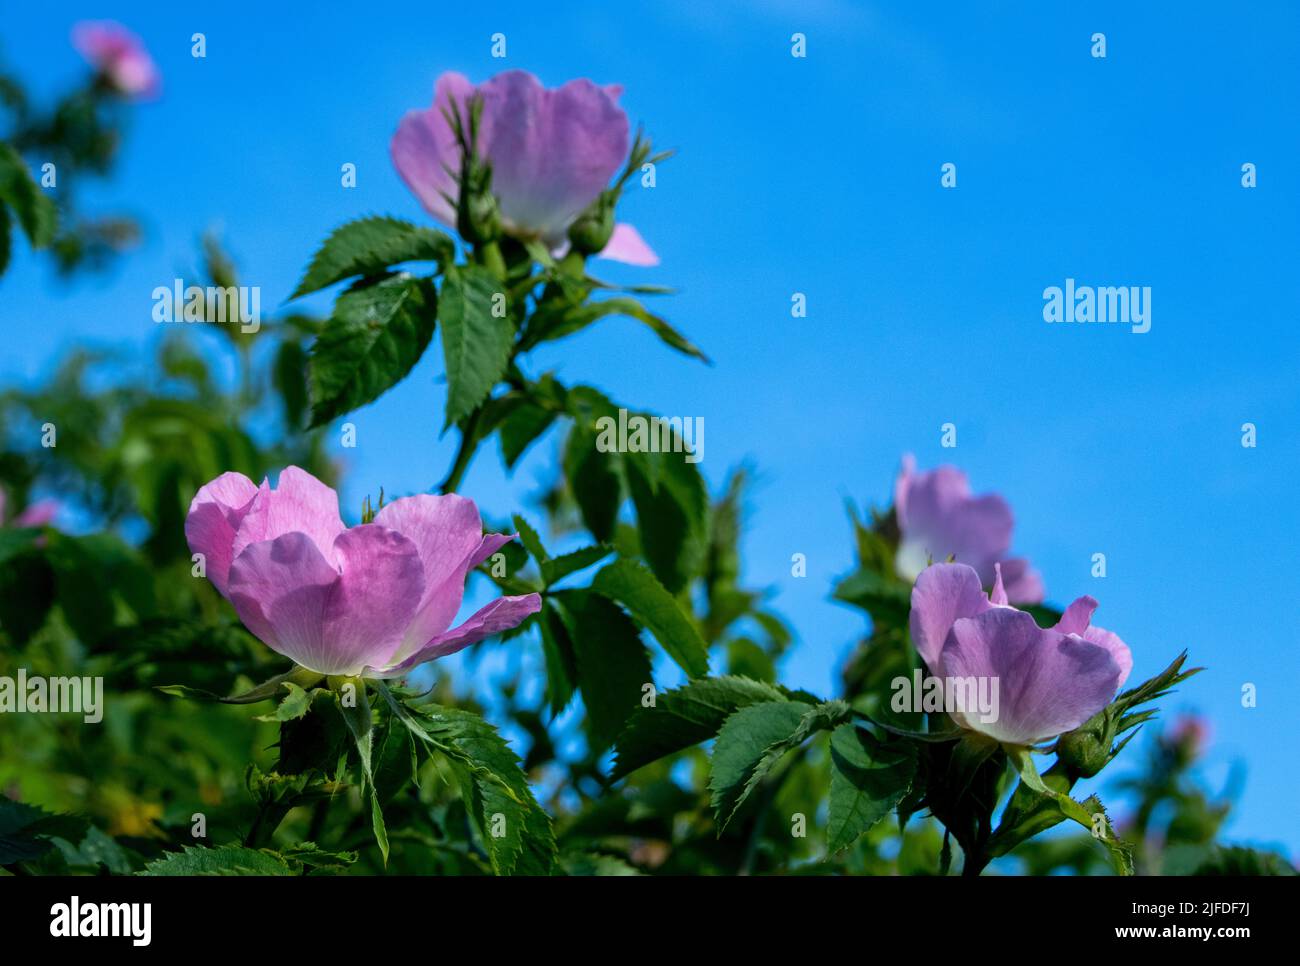 Dog Roses in flower against blue sky Stock Photo